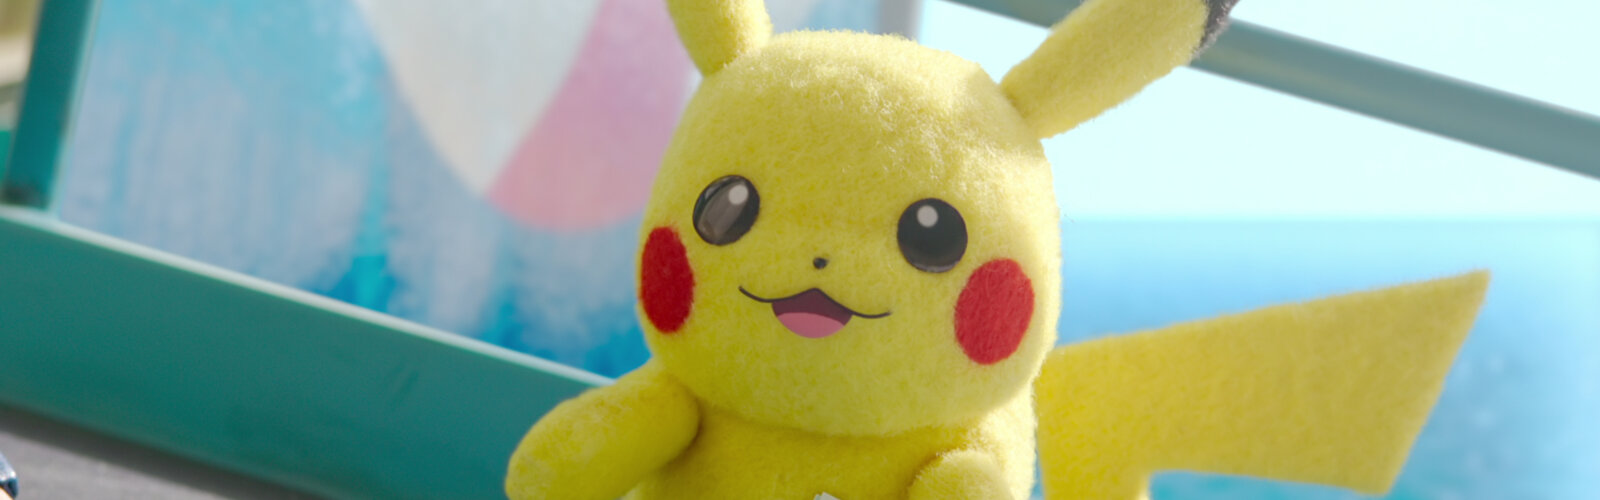 Aus der Netflix-Serie Die Pokémon-Concierge: Pikachu wird wieder fröhlich.